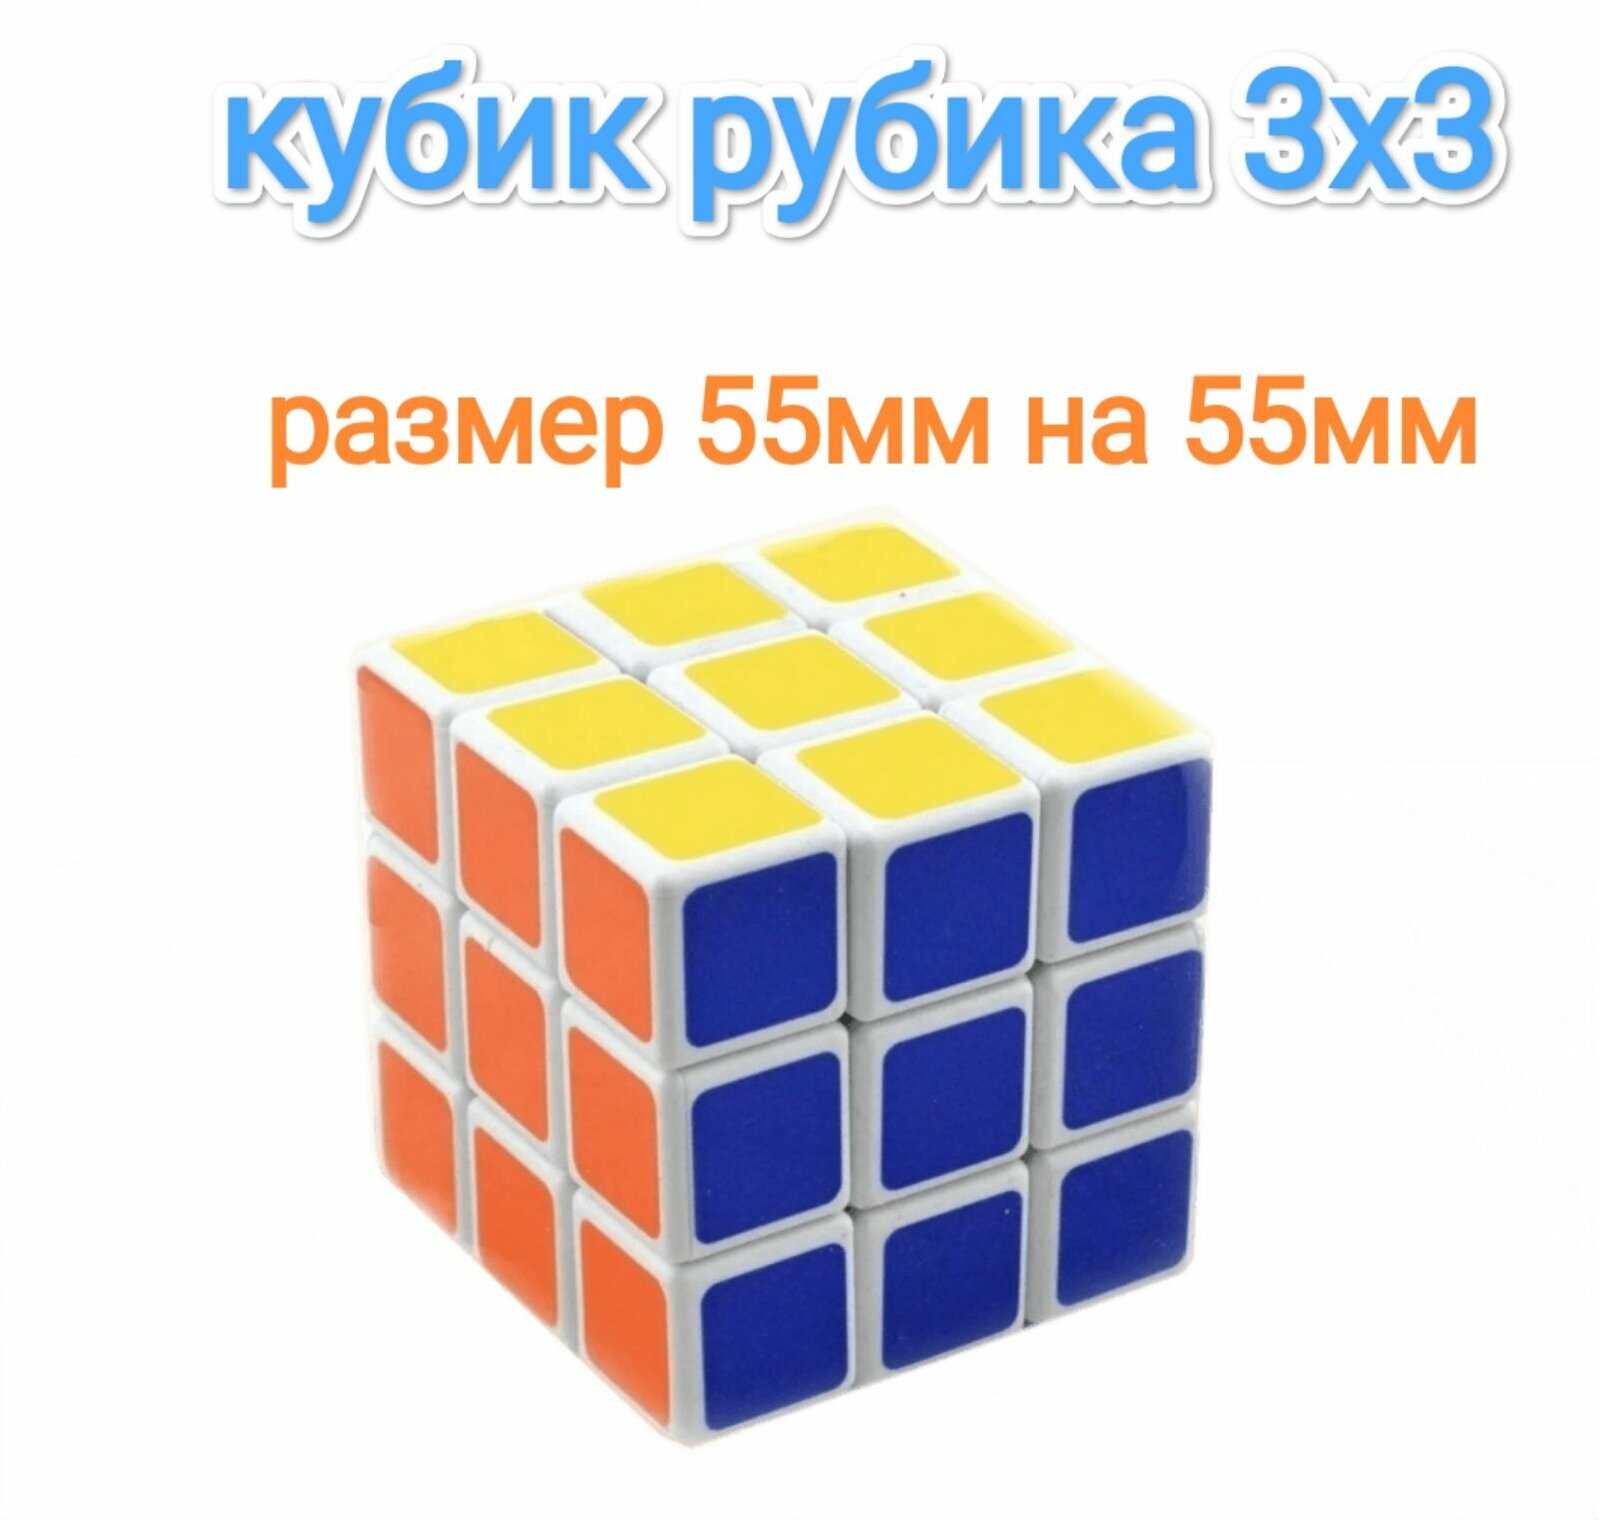 Головоломка кубик рубика 3x3